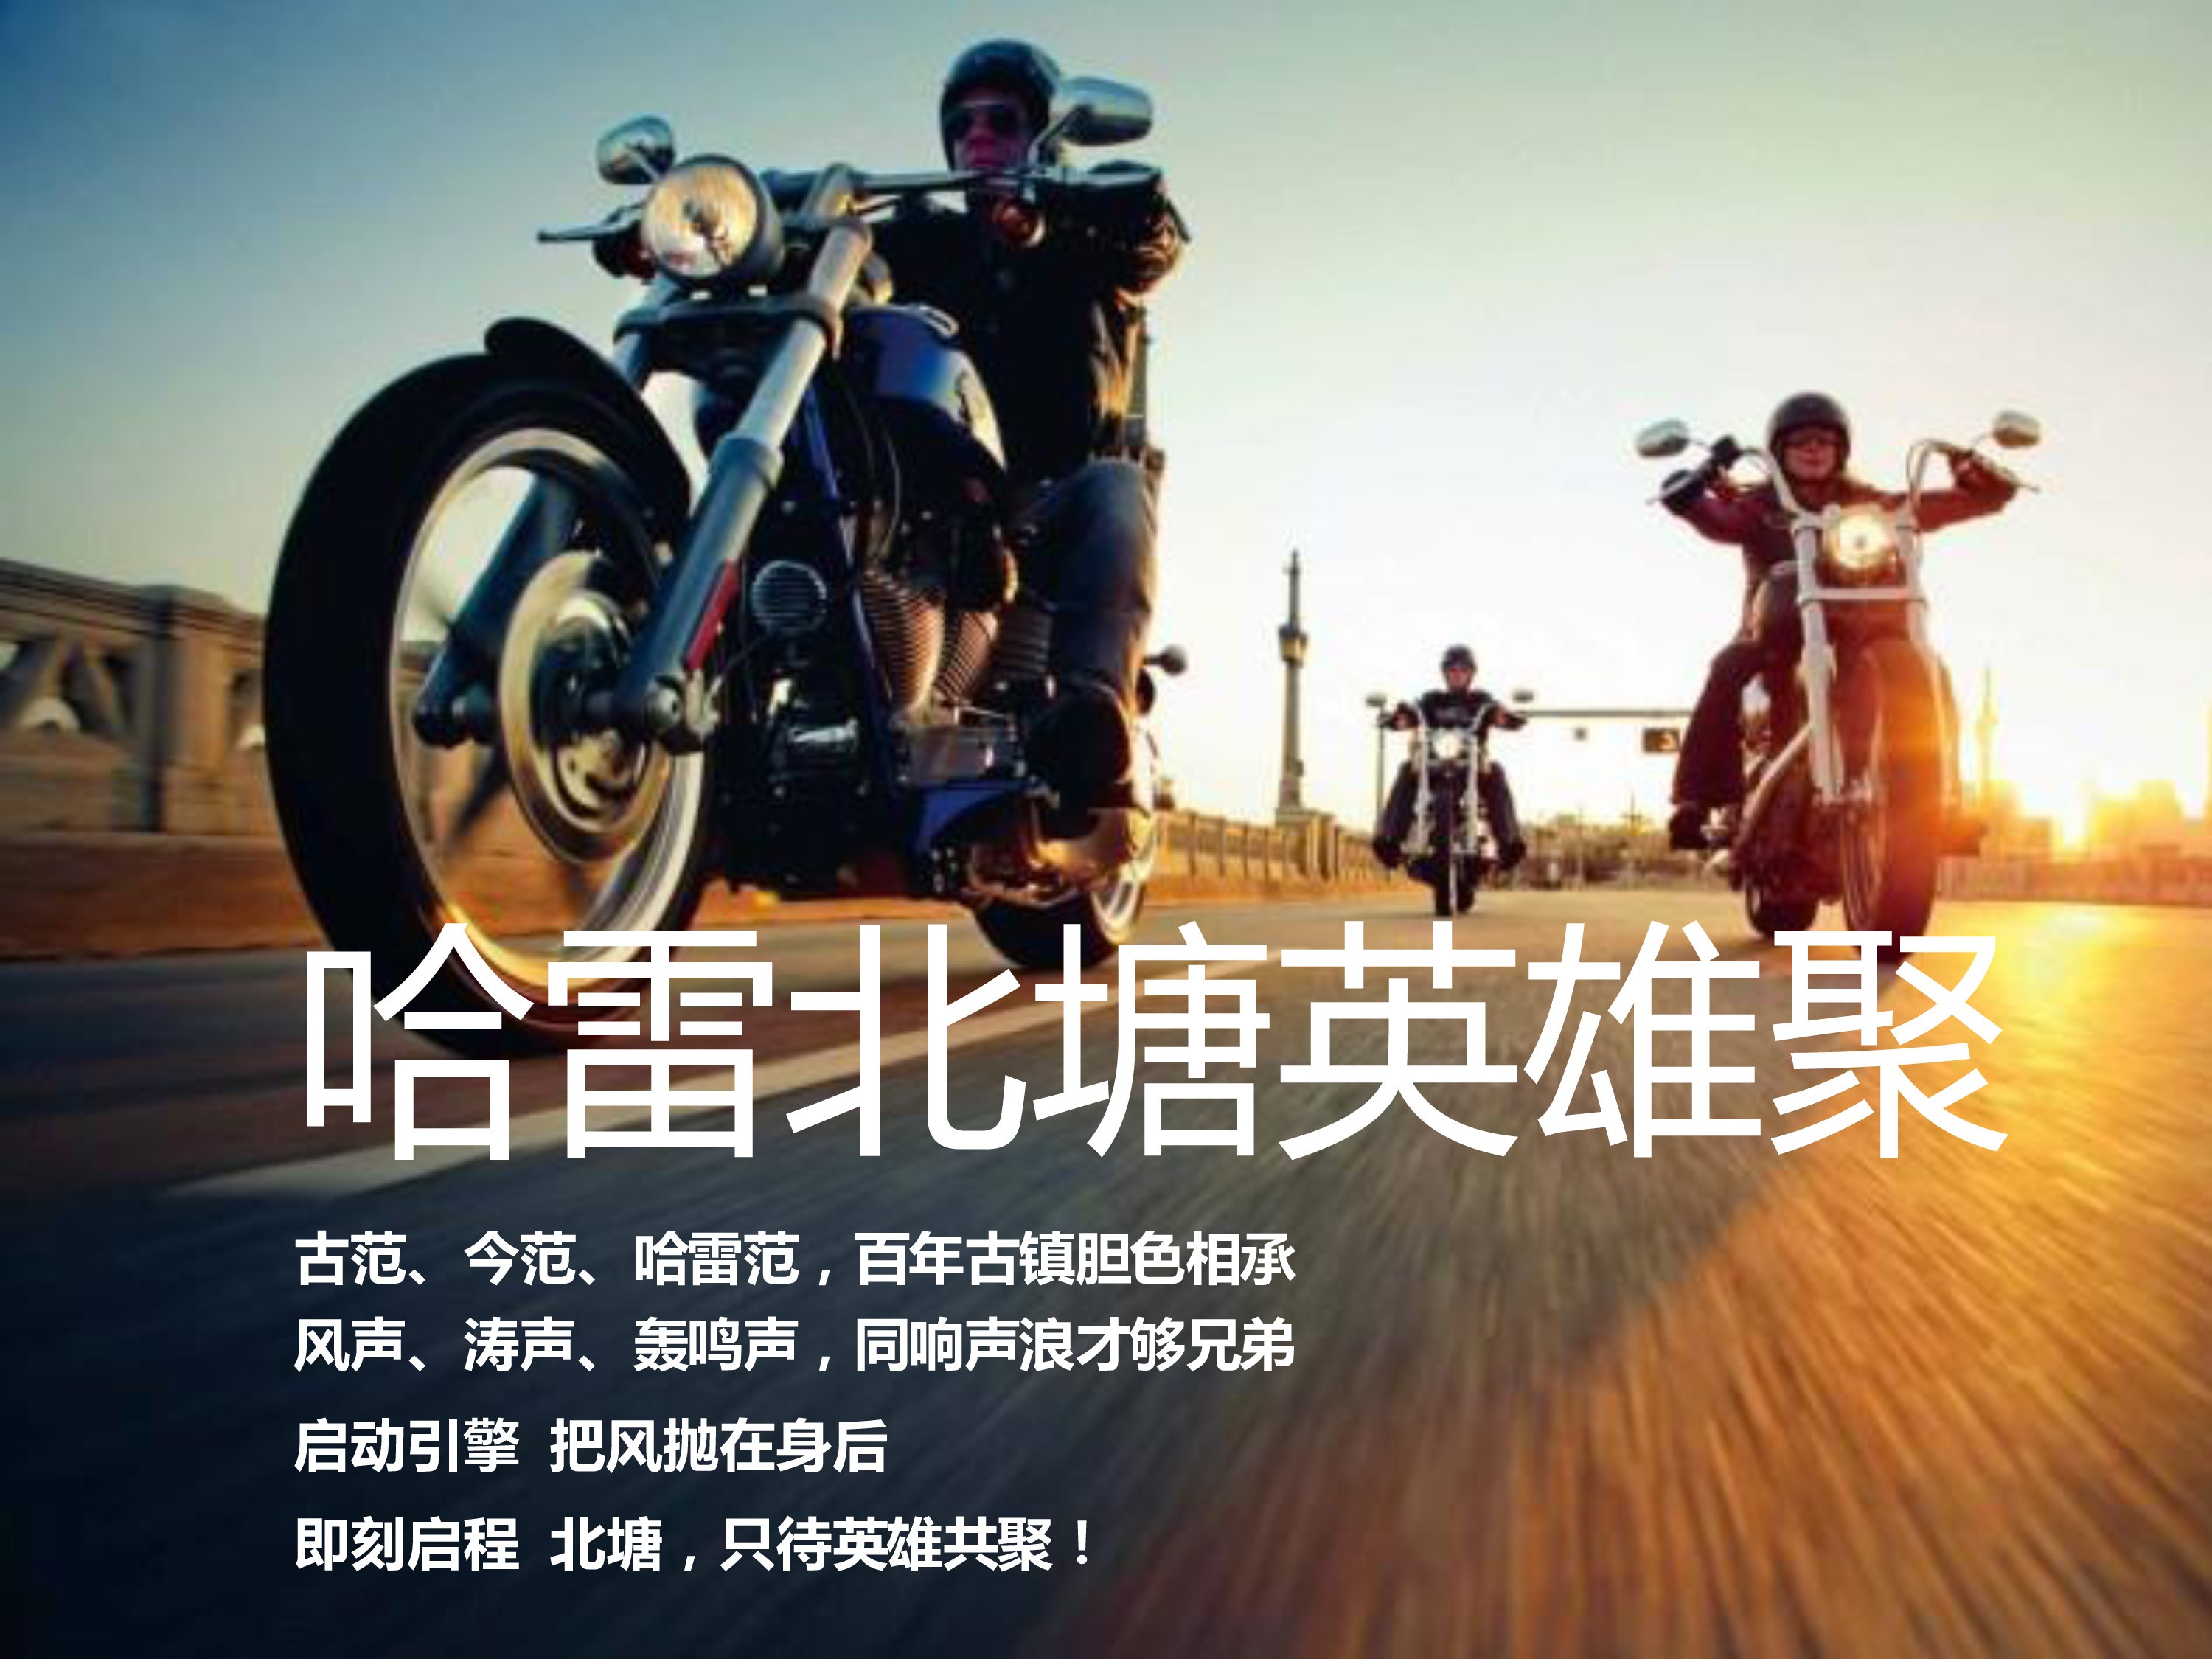 浙江哈雷骑士出征2015全国车主天津大骑行--开始报名